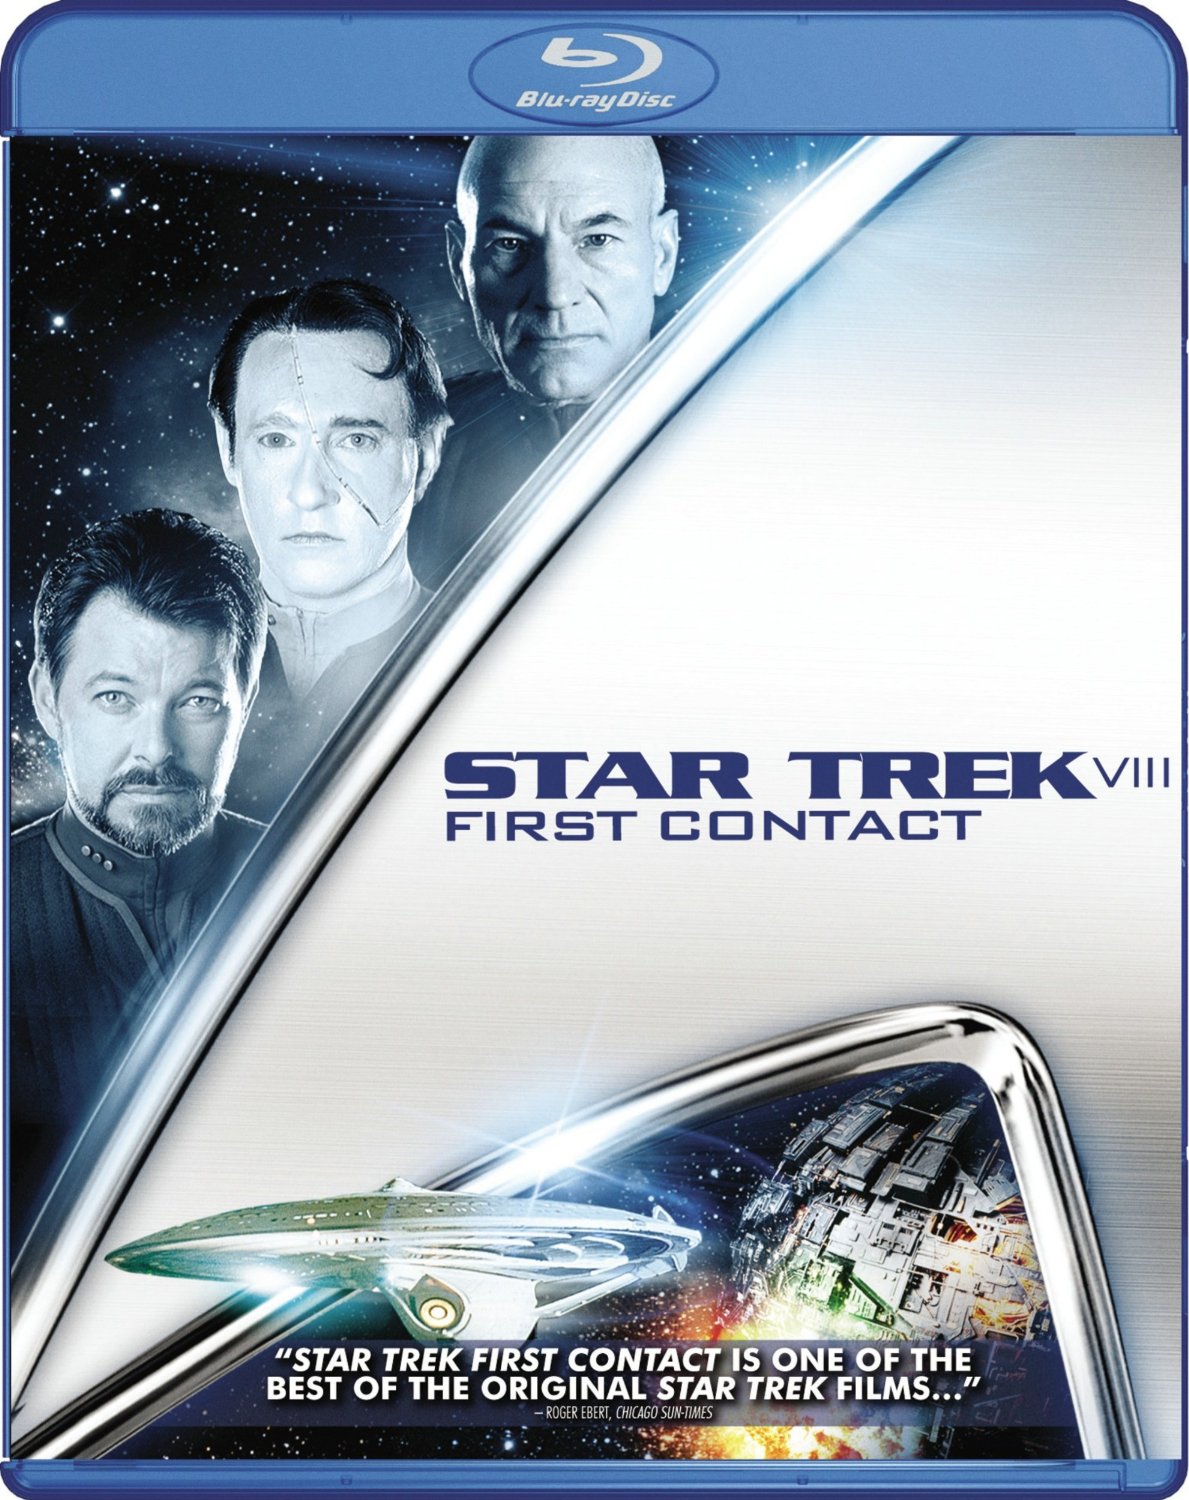 High Resolution Wallpaper | Star Trek: First Contact 1189x1500 px